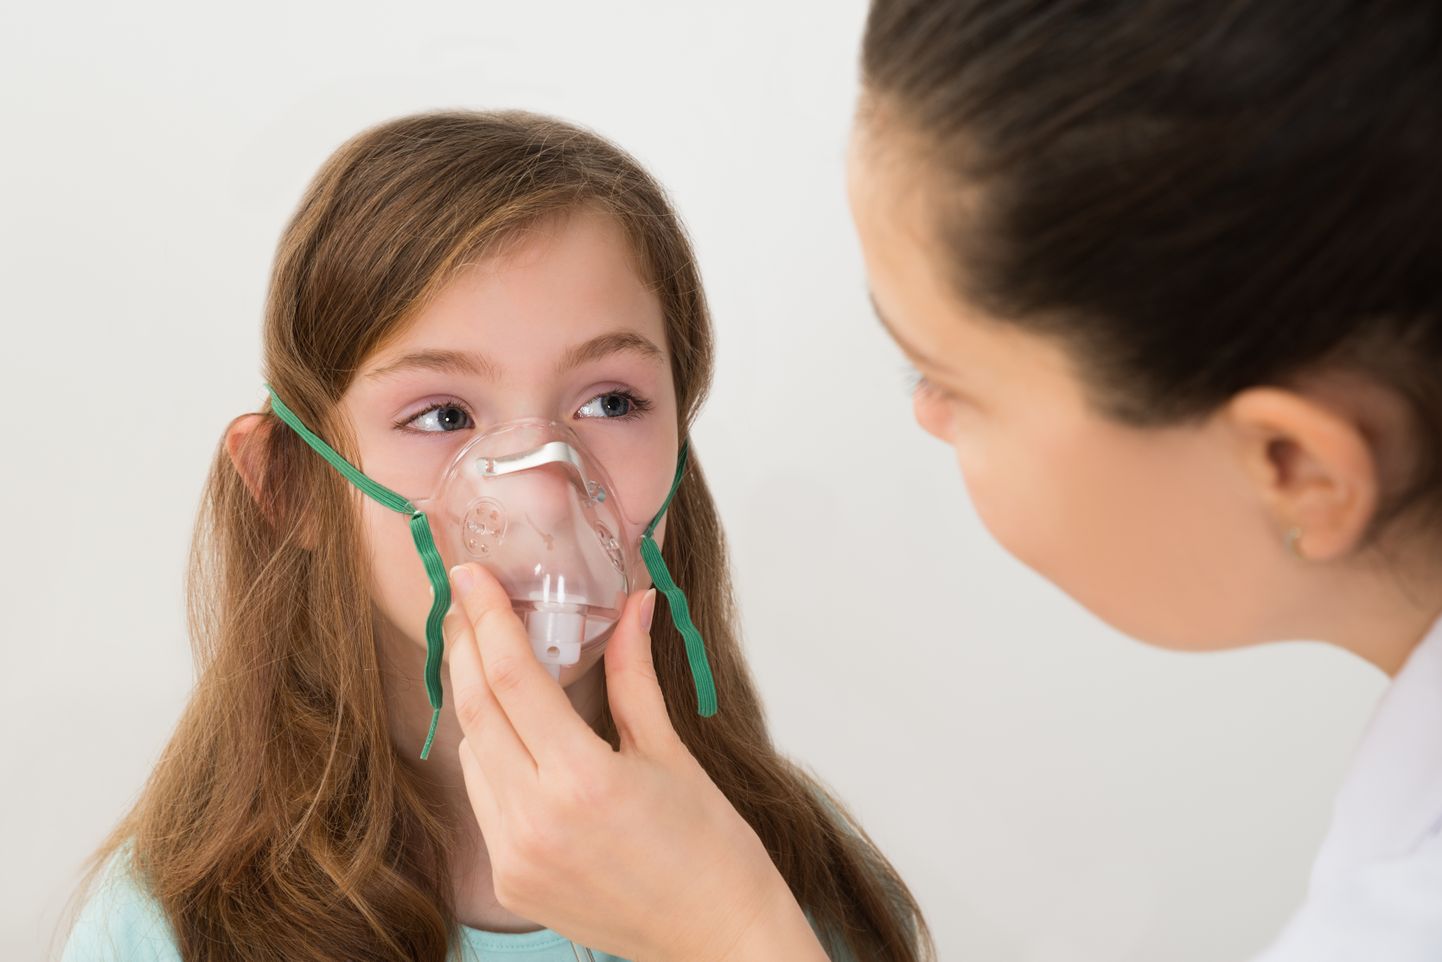 Gripiviirusega lastel toimis astmahoo ravim väiksema tõenäosusega.